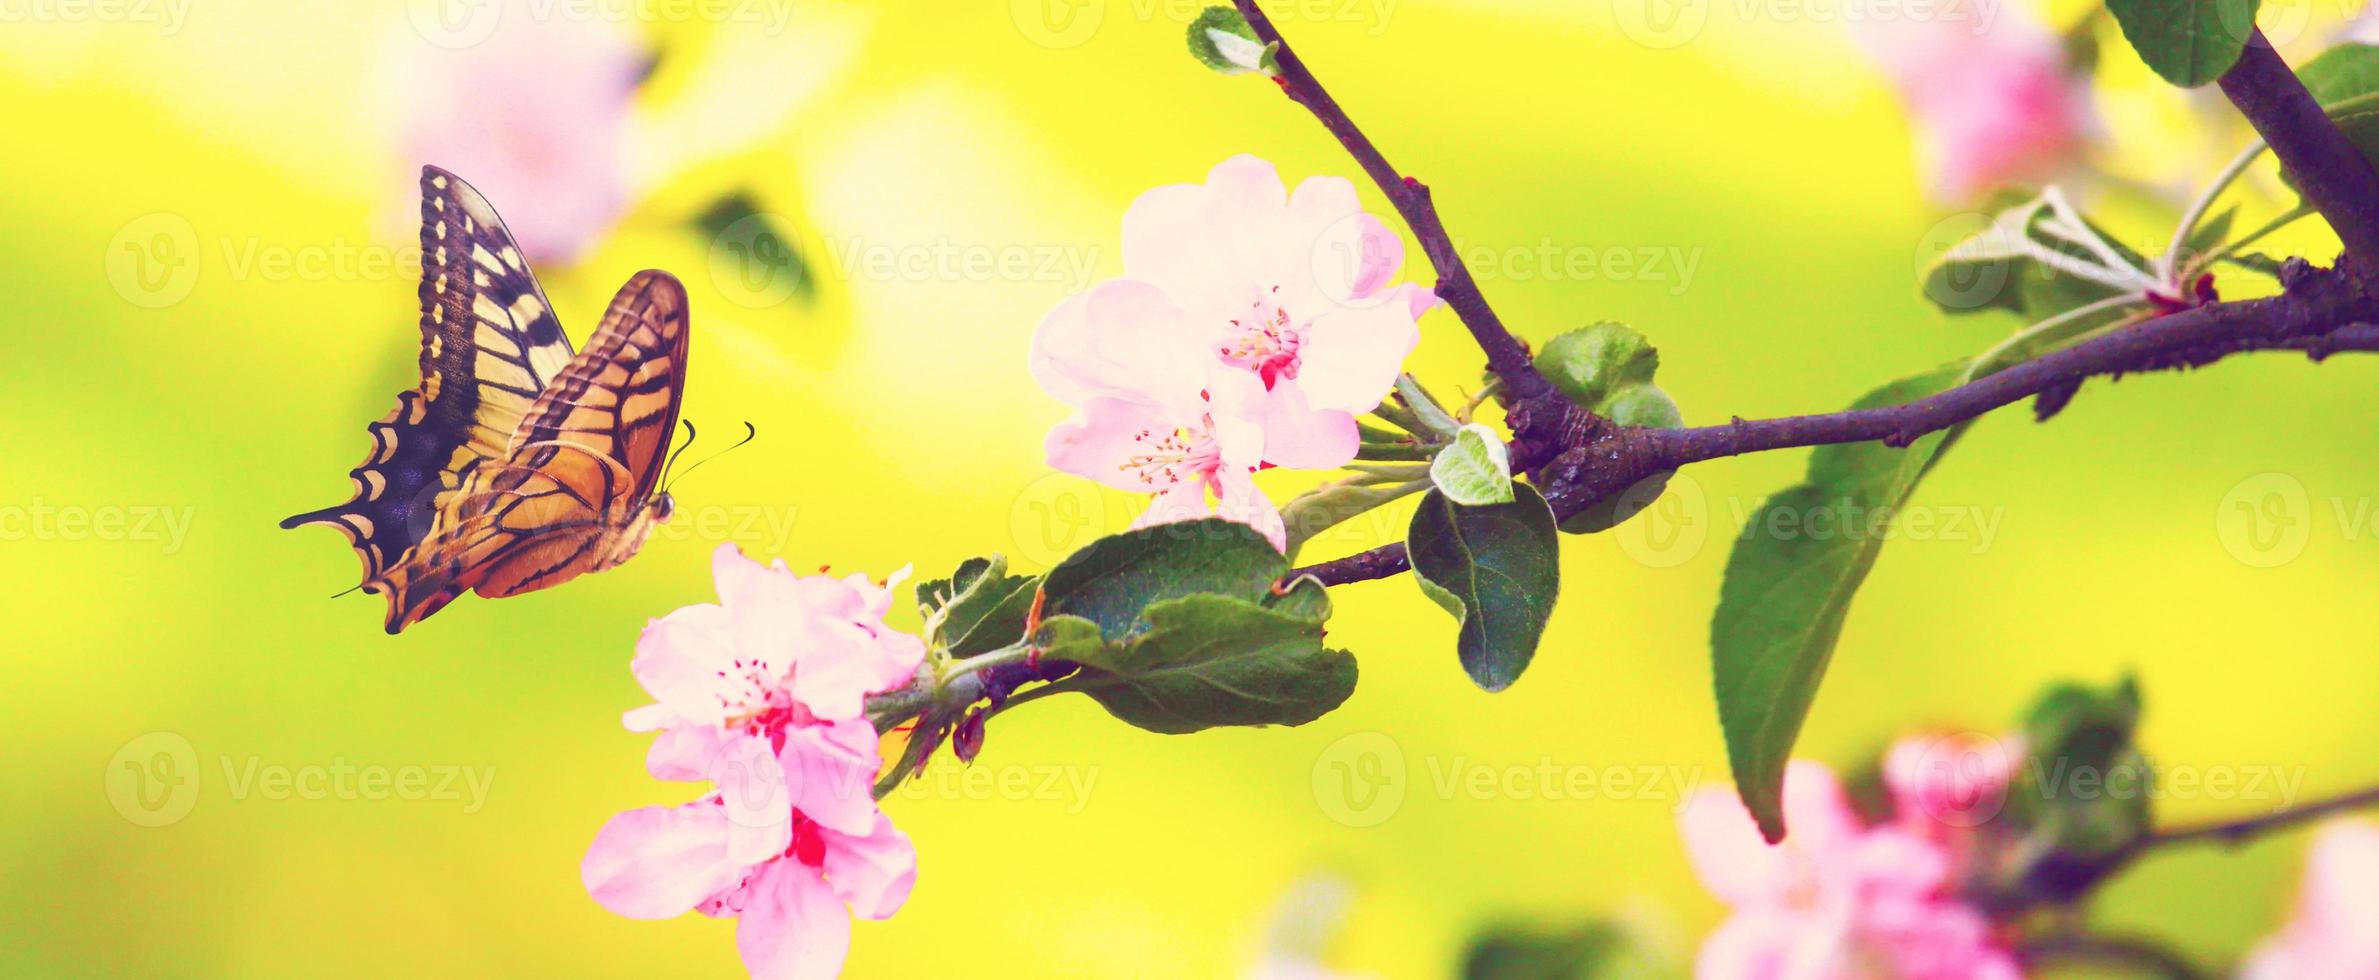 papillon et une belle vue sur la nature des arbres à fleurs printanières sur fond flou. photo